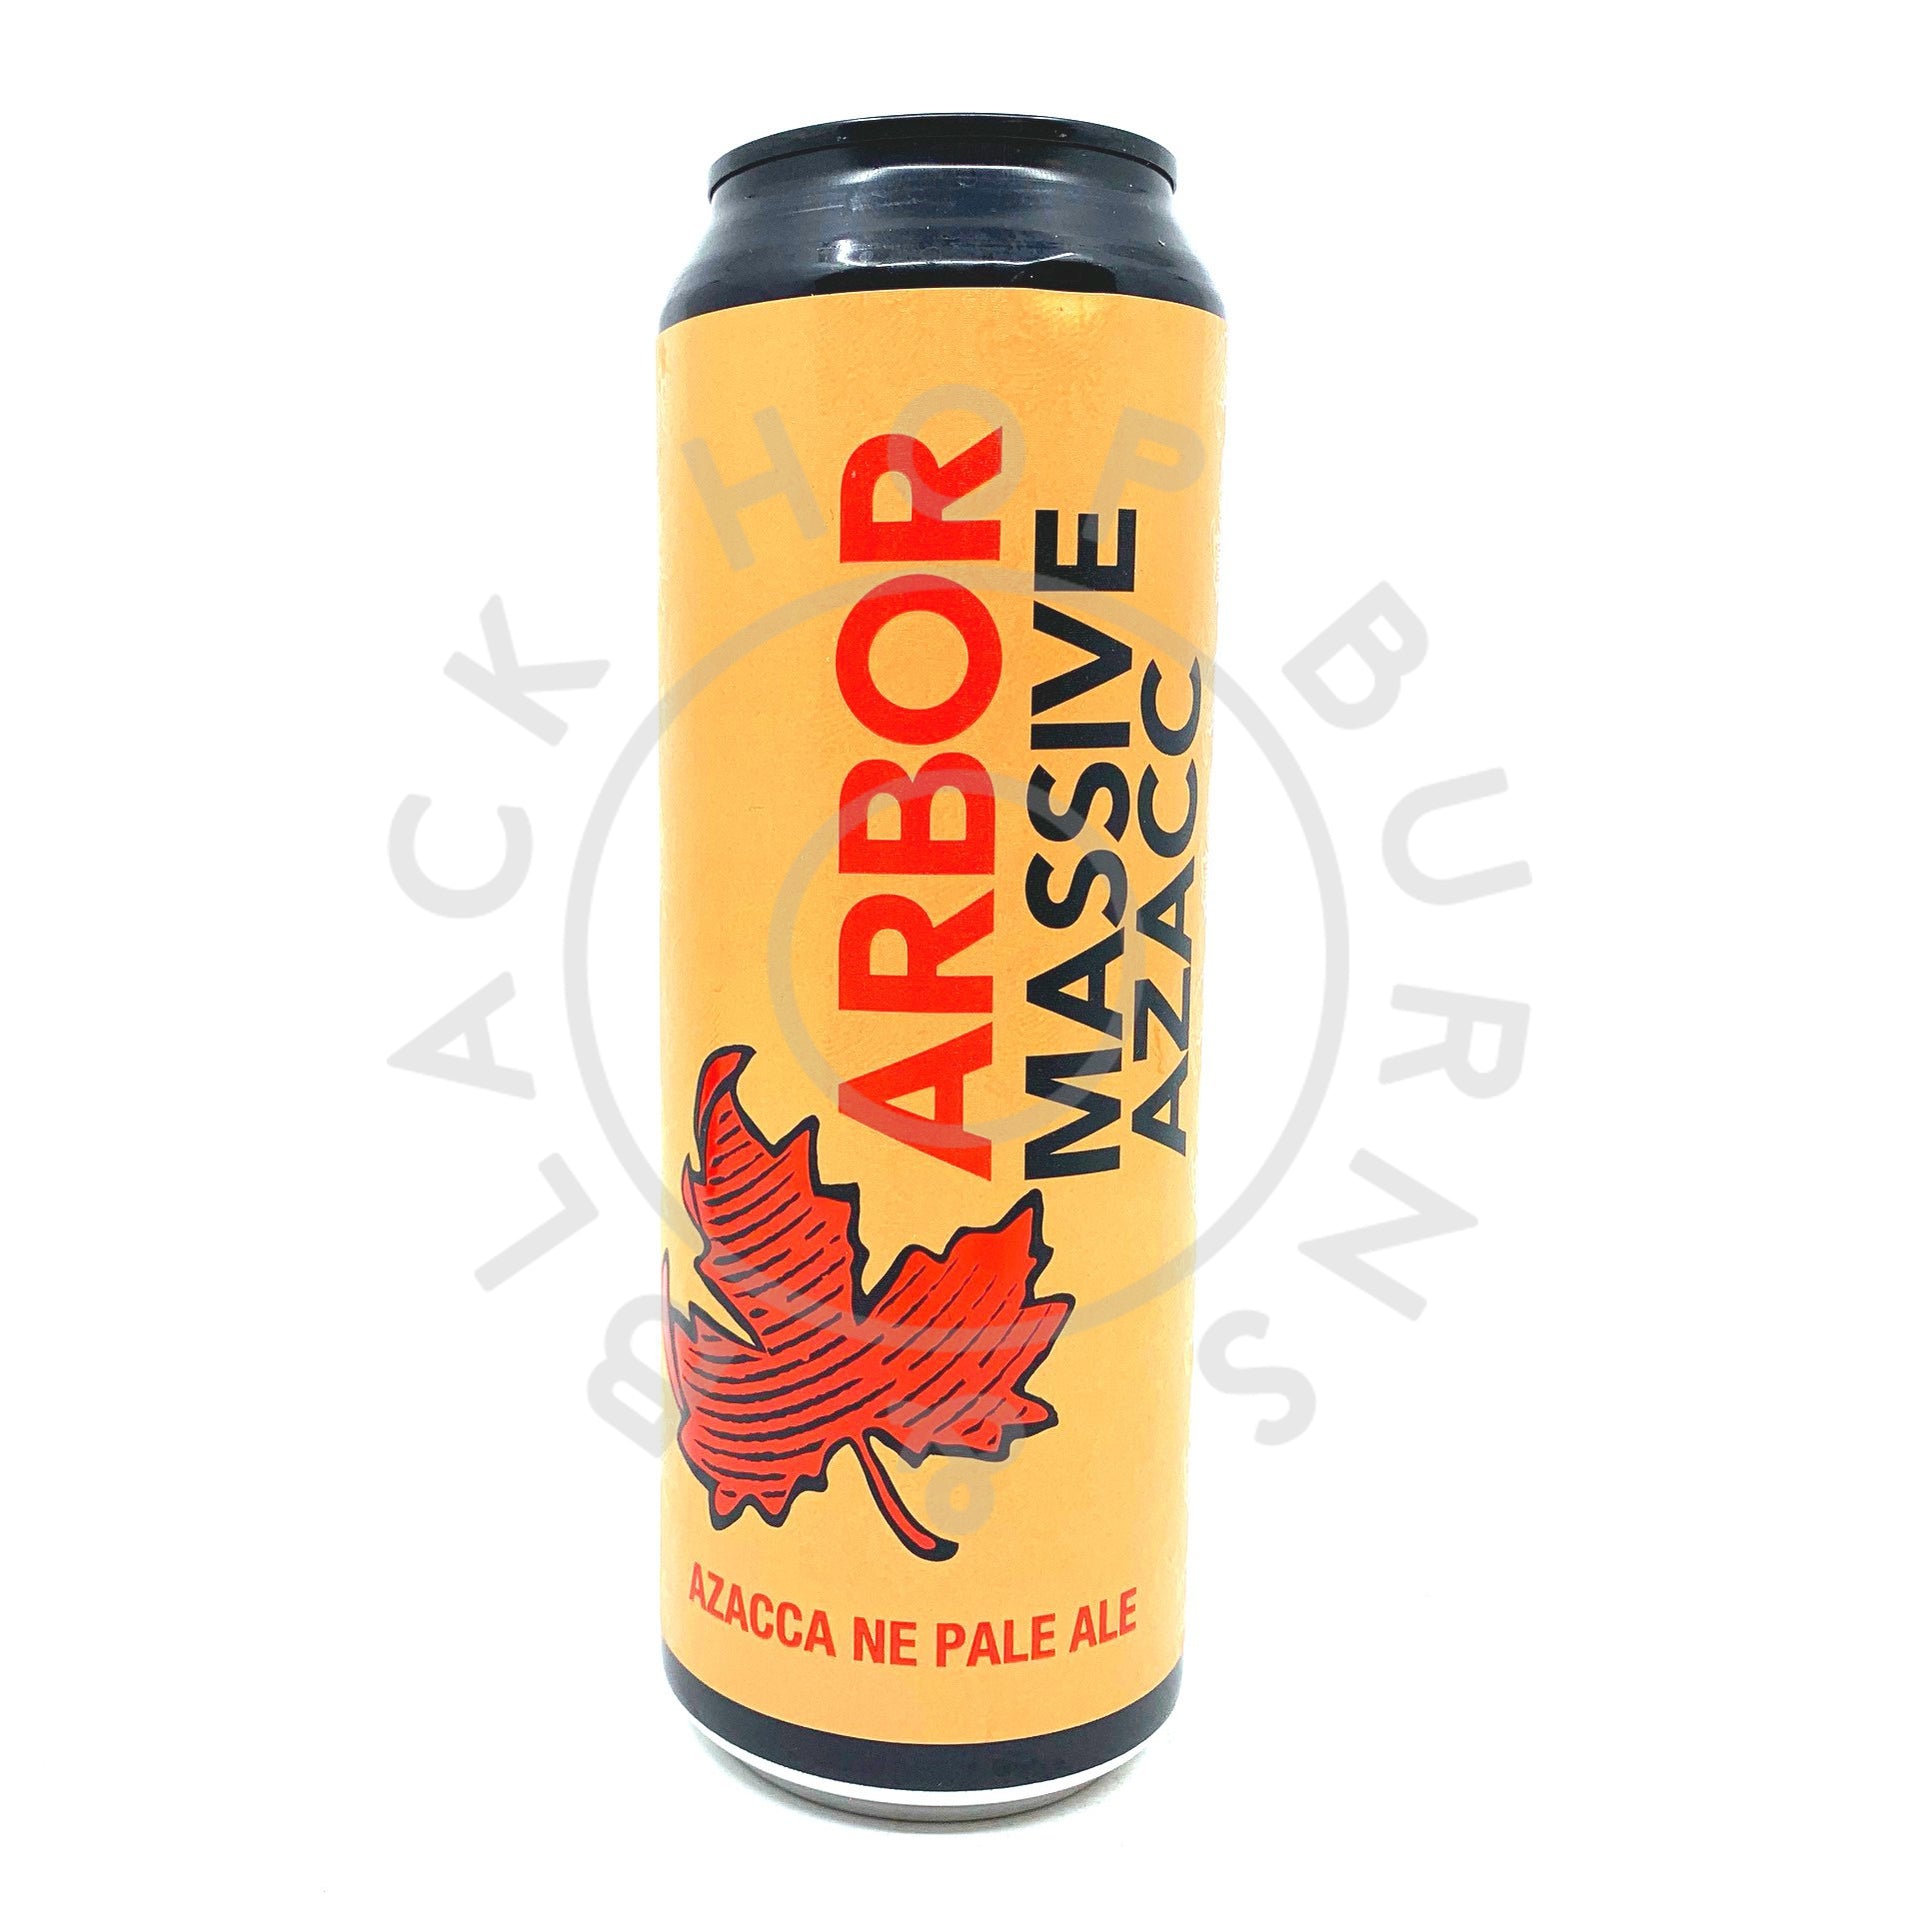 Arbor Massive Azacc Pale Ale 5.4% (568ml can)-Hop Burns & Black